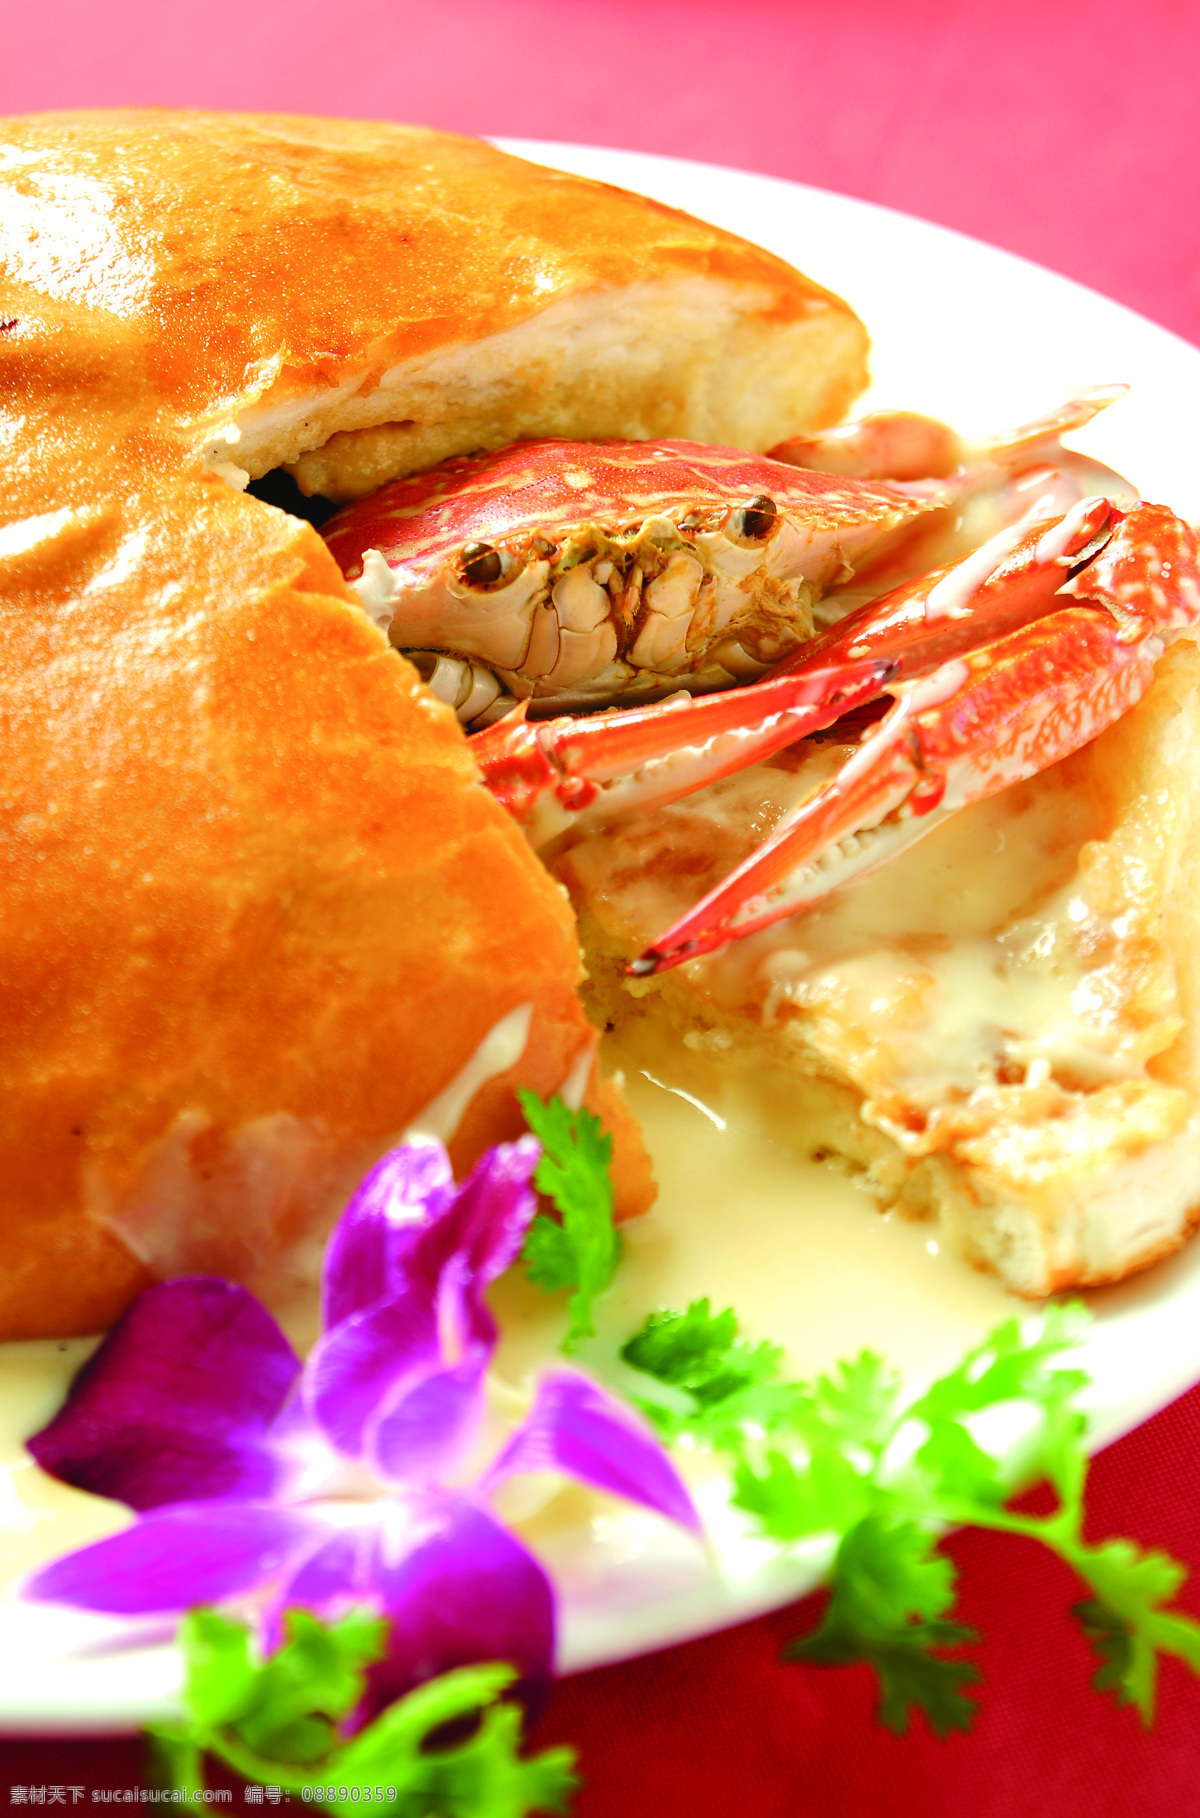 面包芝士焗蟹 黄金满屋 特色 菜名 花蟹 芝士 面包 传统美食 餐饮美食